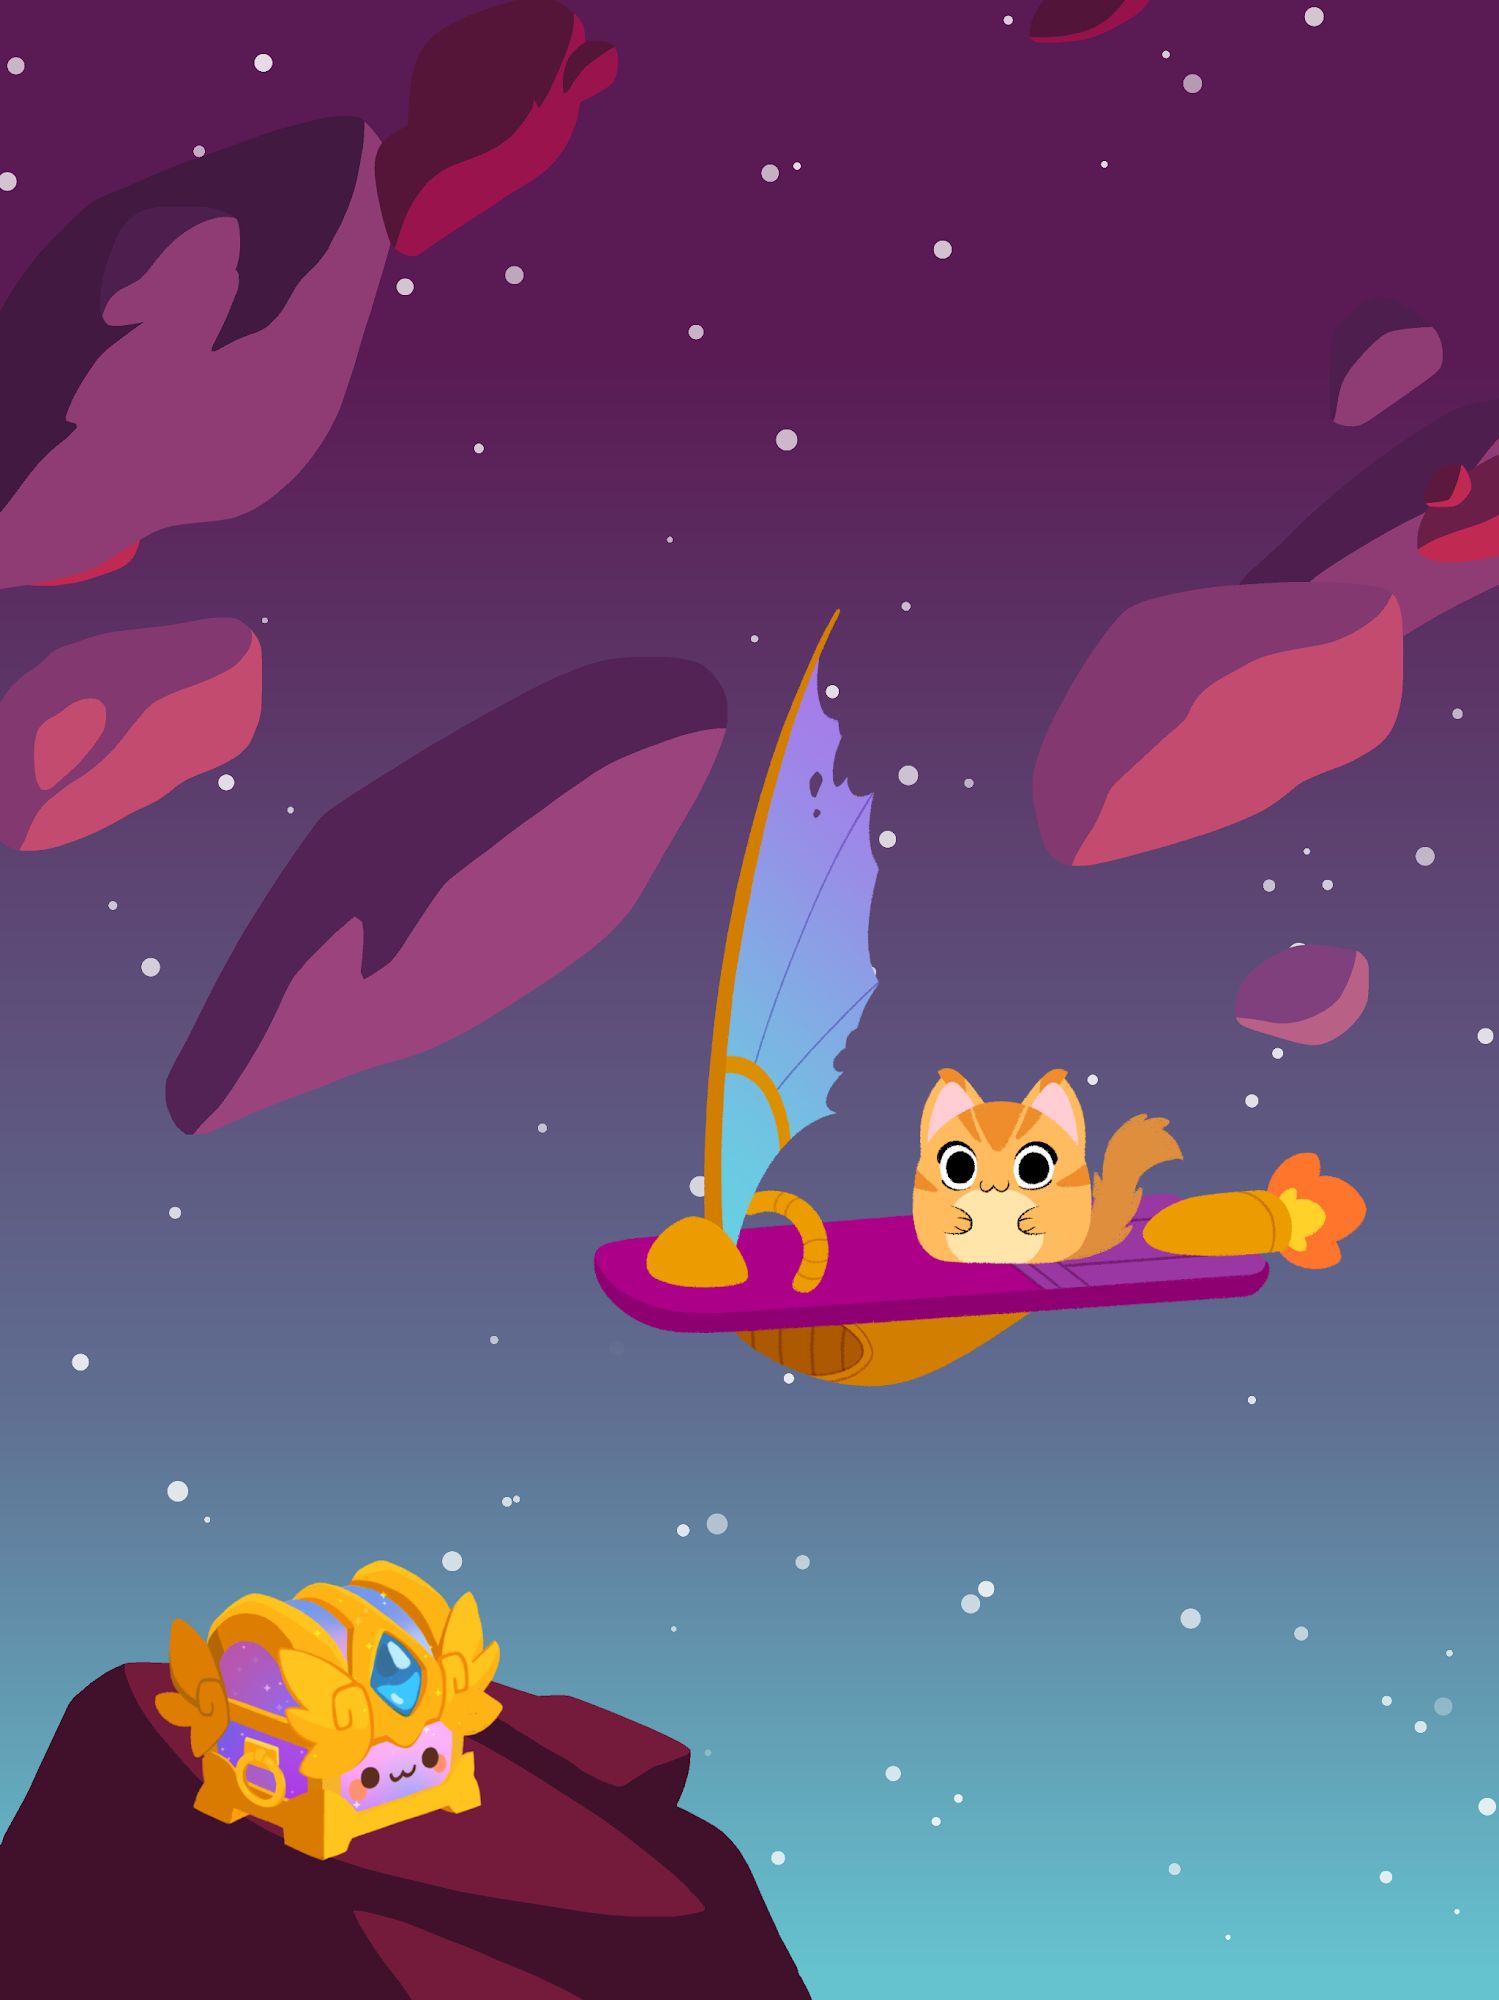 Descargar Sailor Cats 2: Space Odyssey gratis para Android.